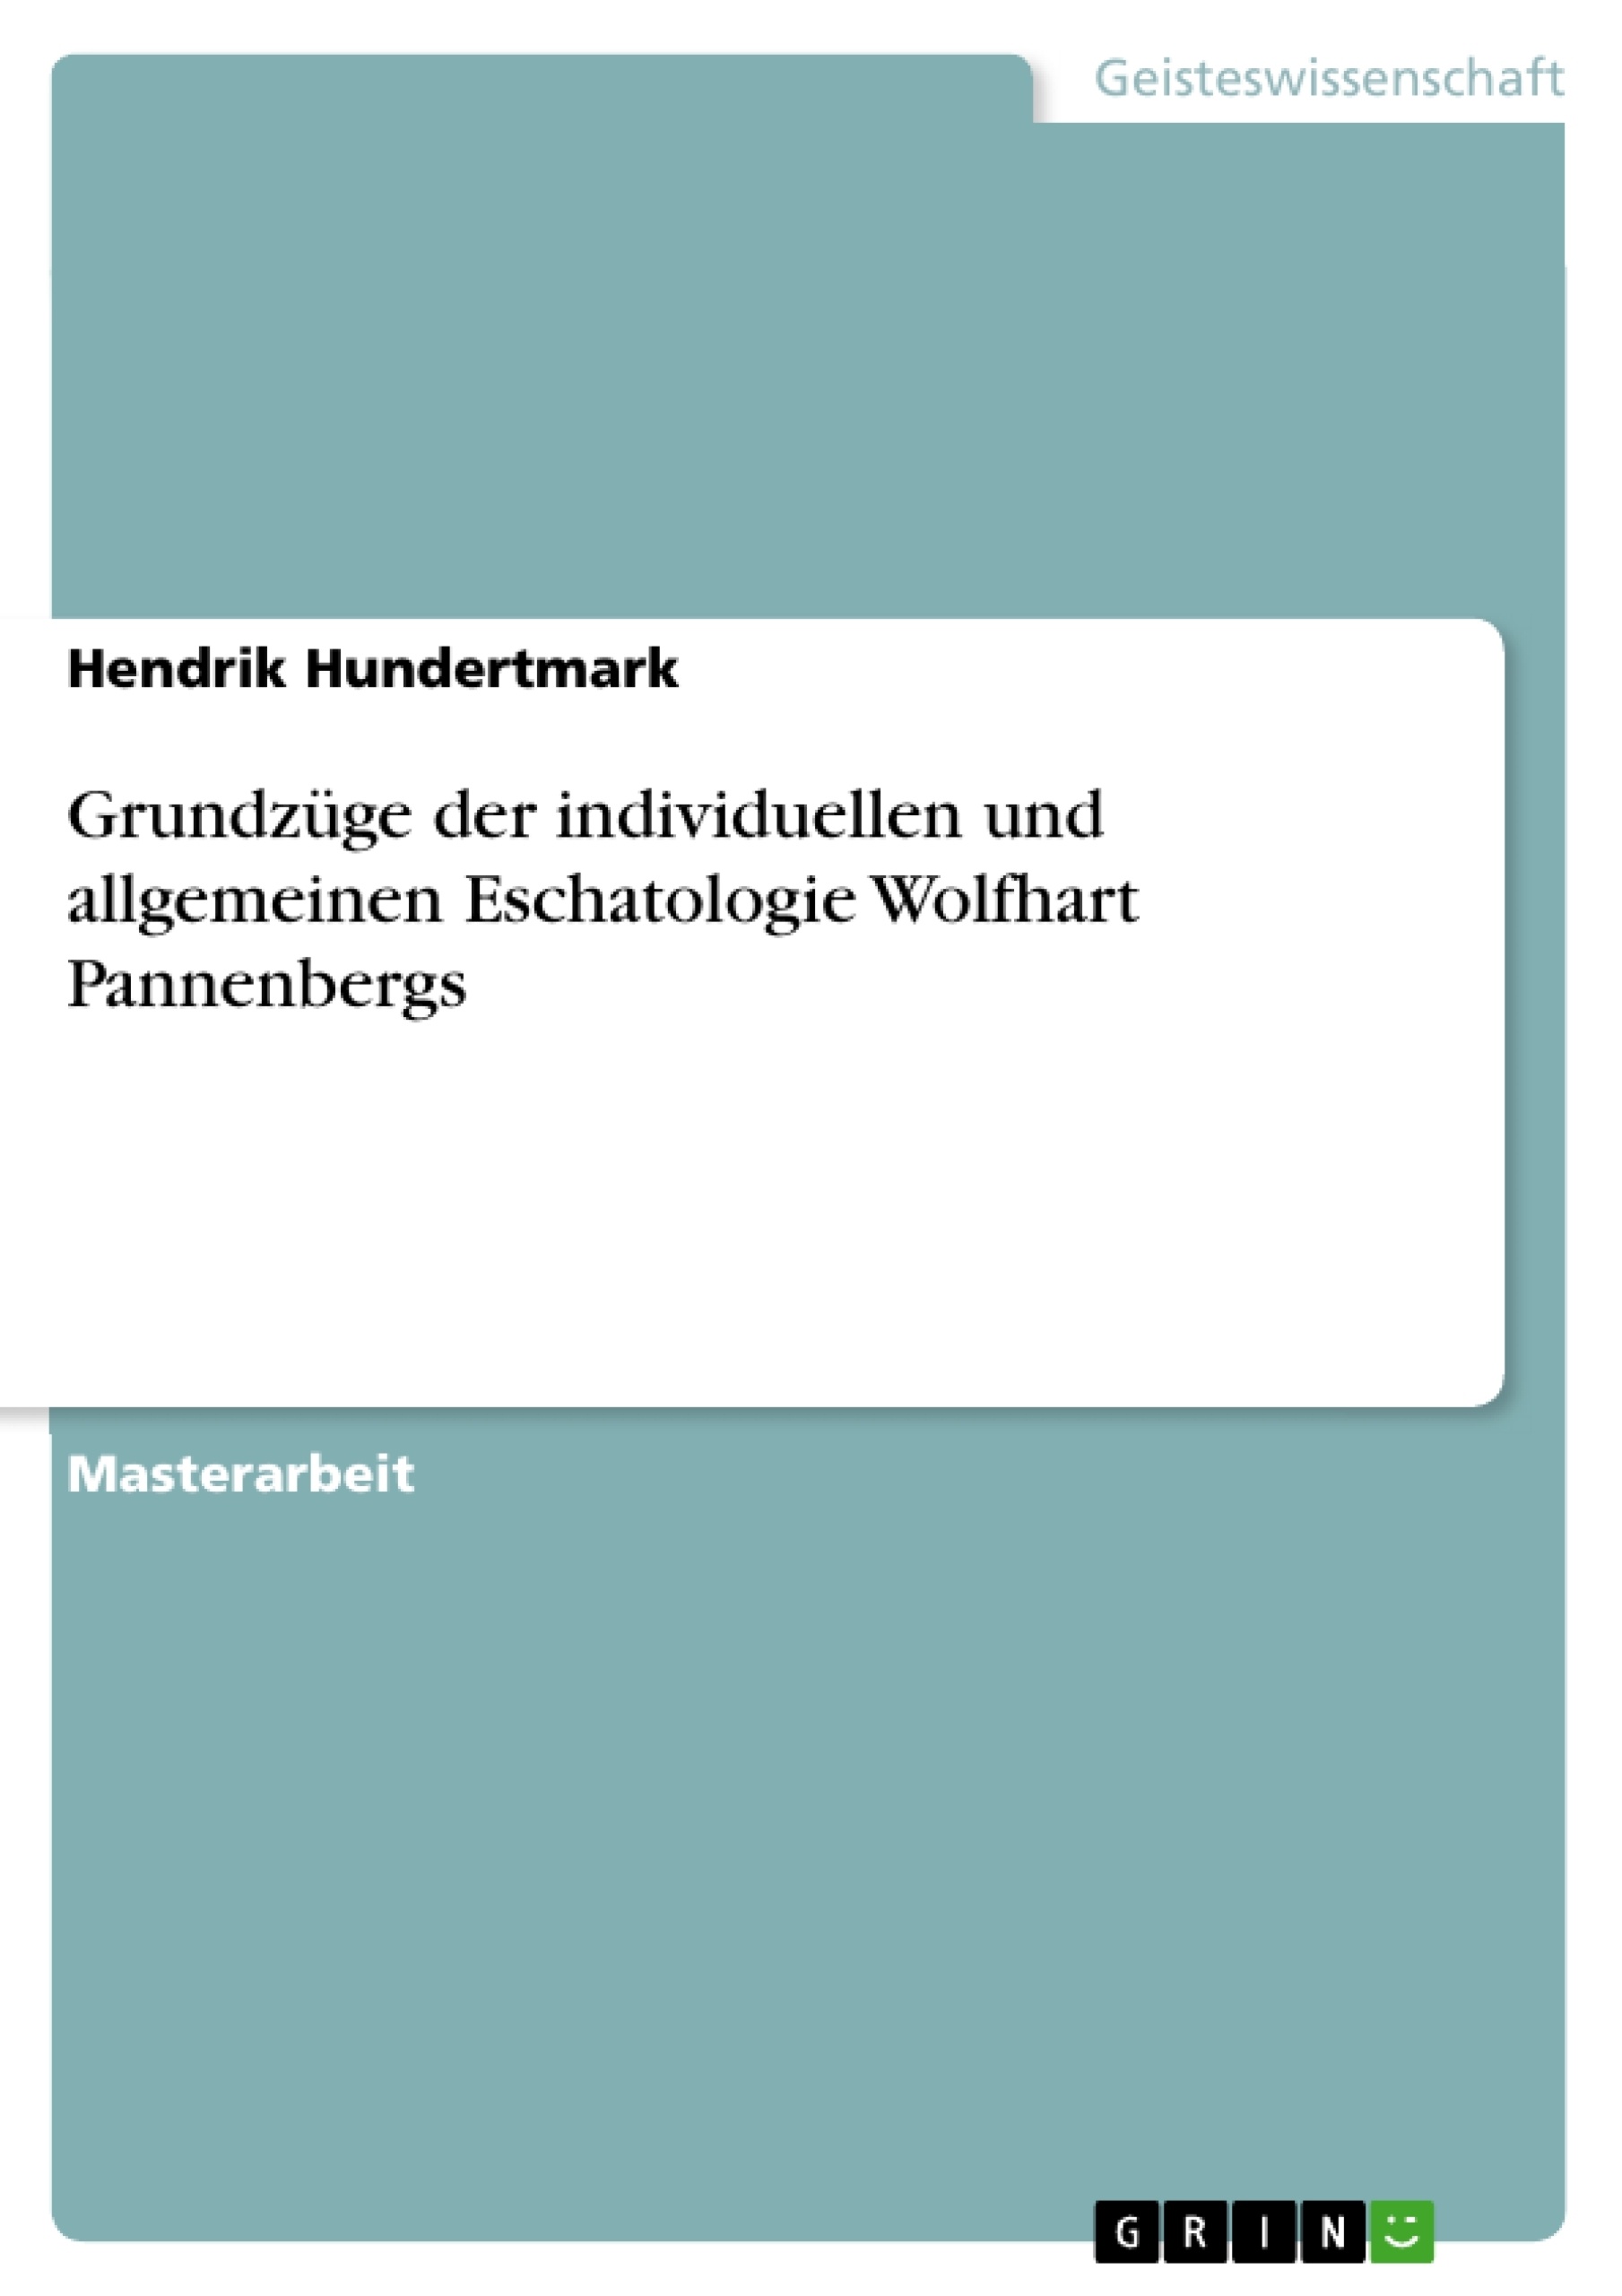 Título: Grundzüge der individuellen und allgemeinen Eschatologie Wolfhart Pannenbergs